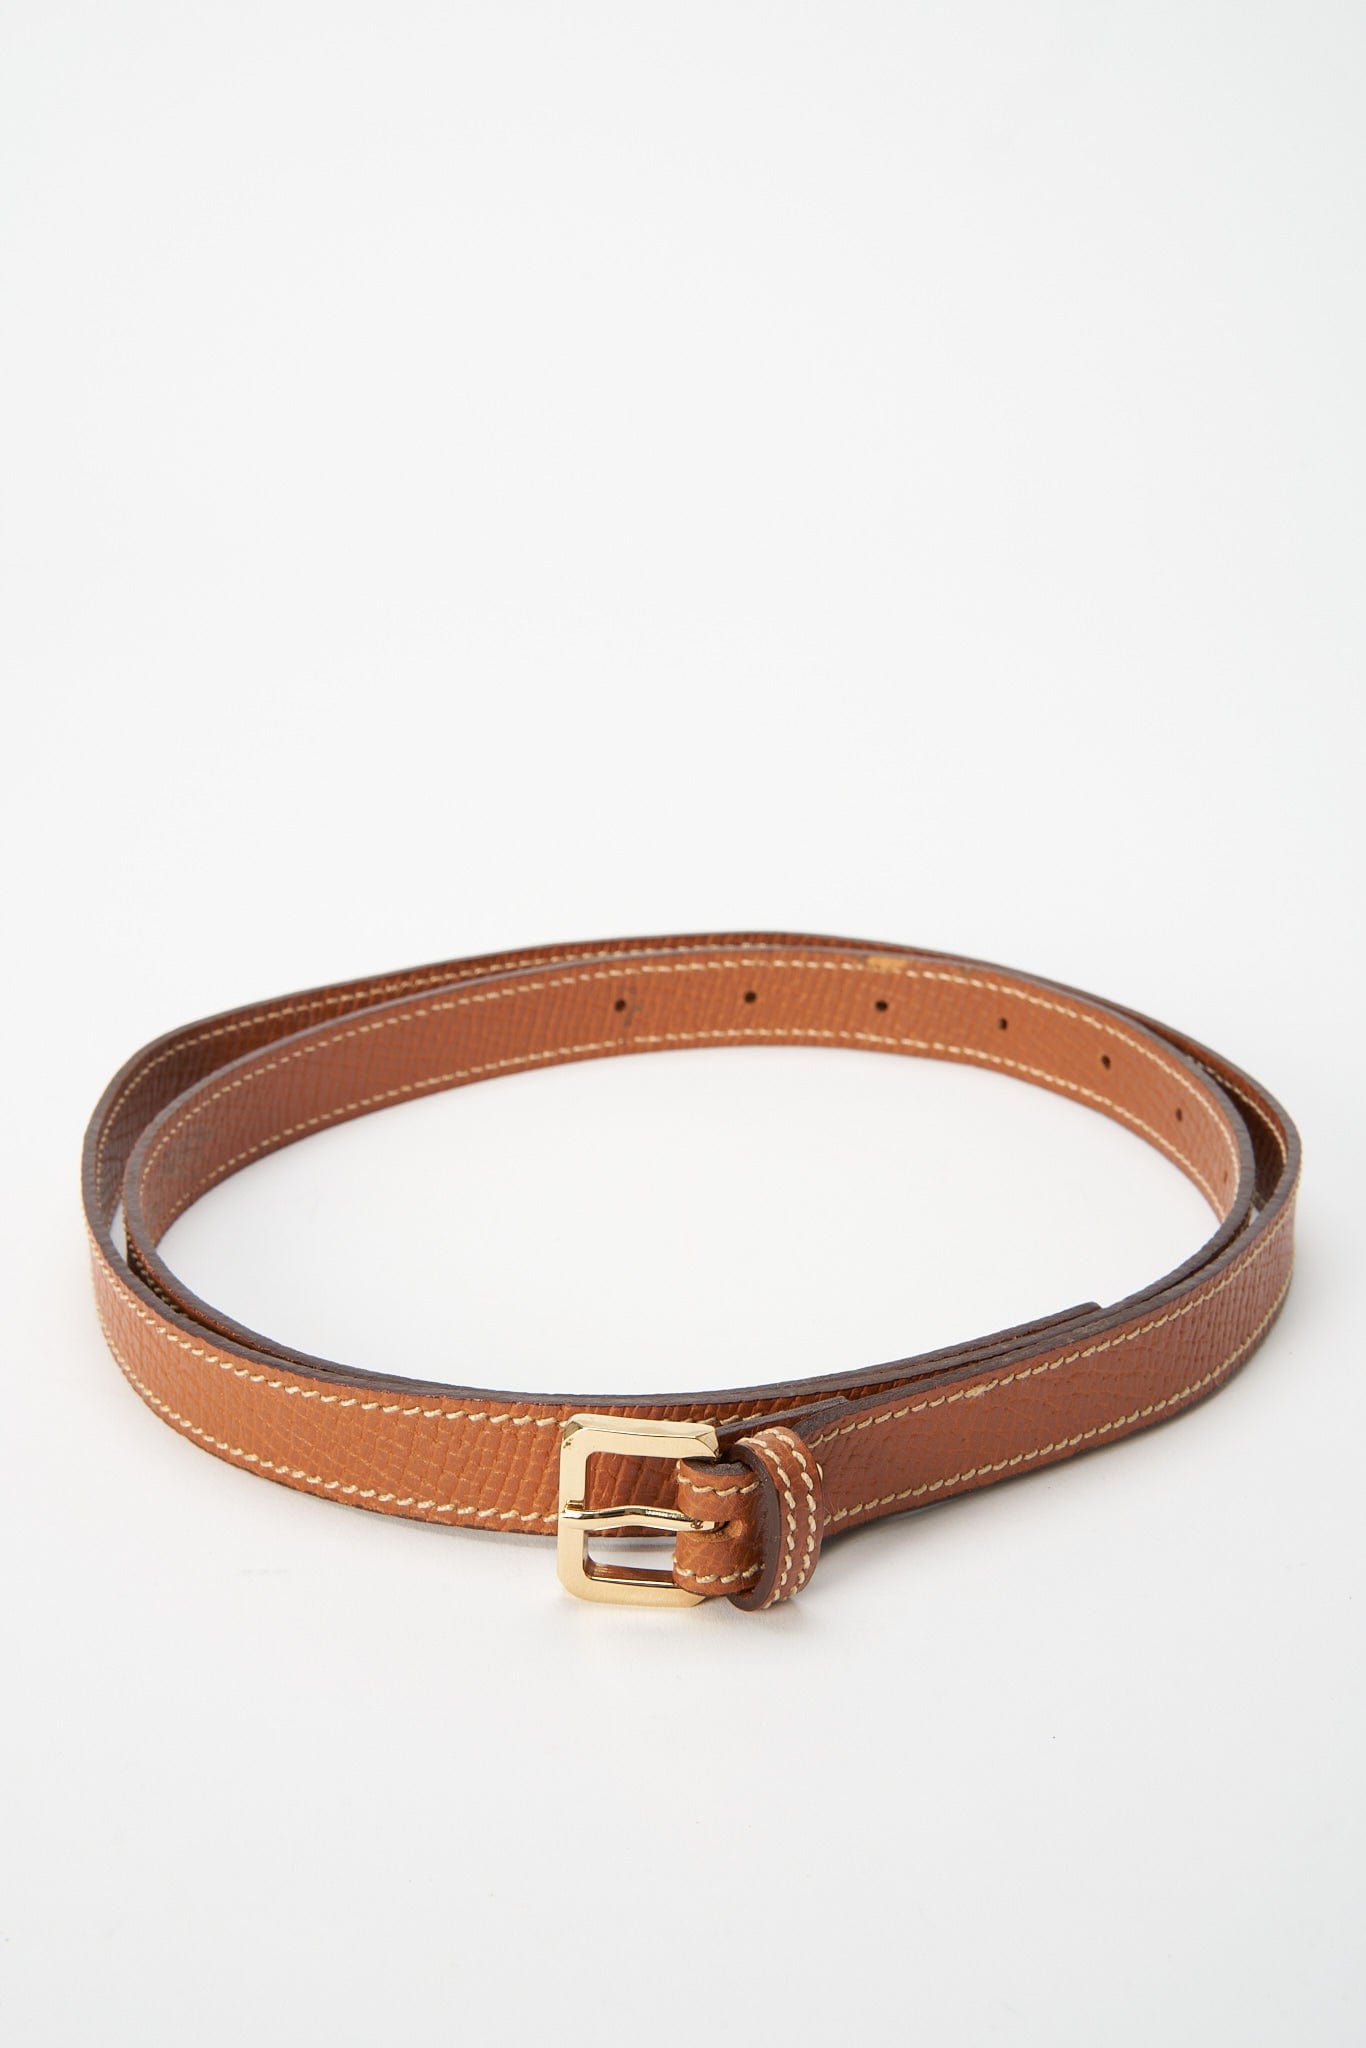 Vintage Loewe Tan Belt